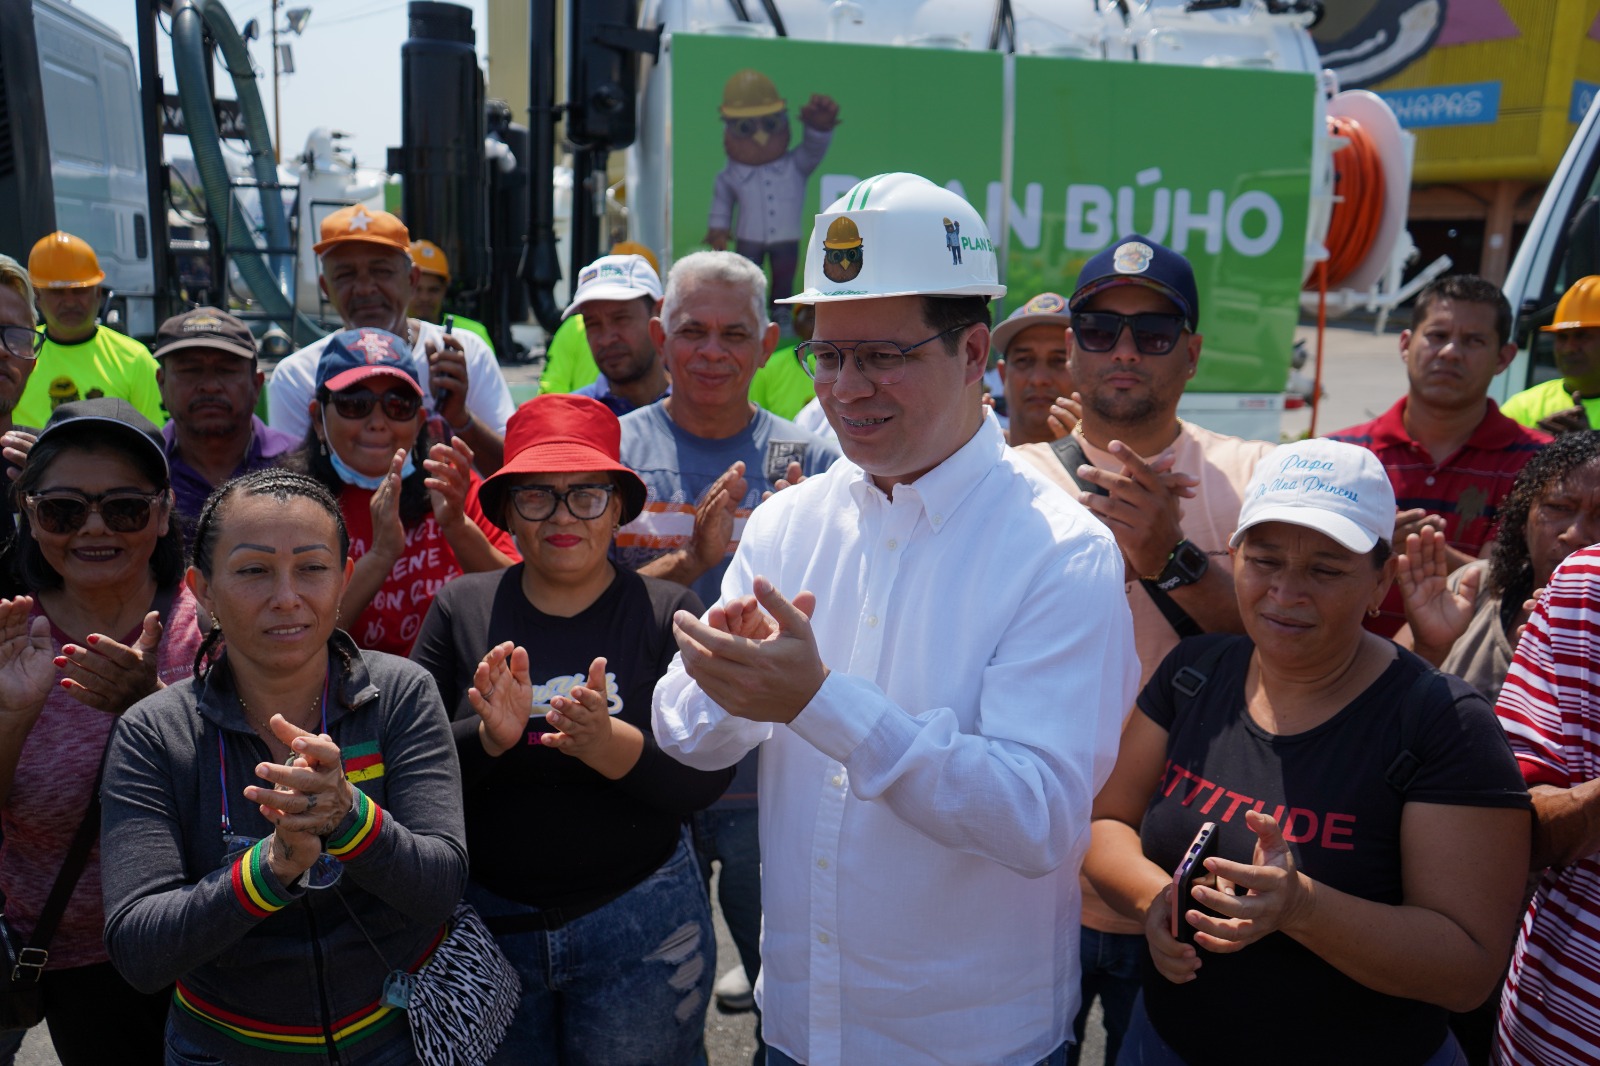 Alcalde Fuenmayor dotó de camiones Vacuum a cuadrillas del Plan Búho